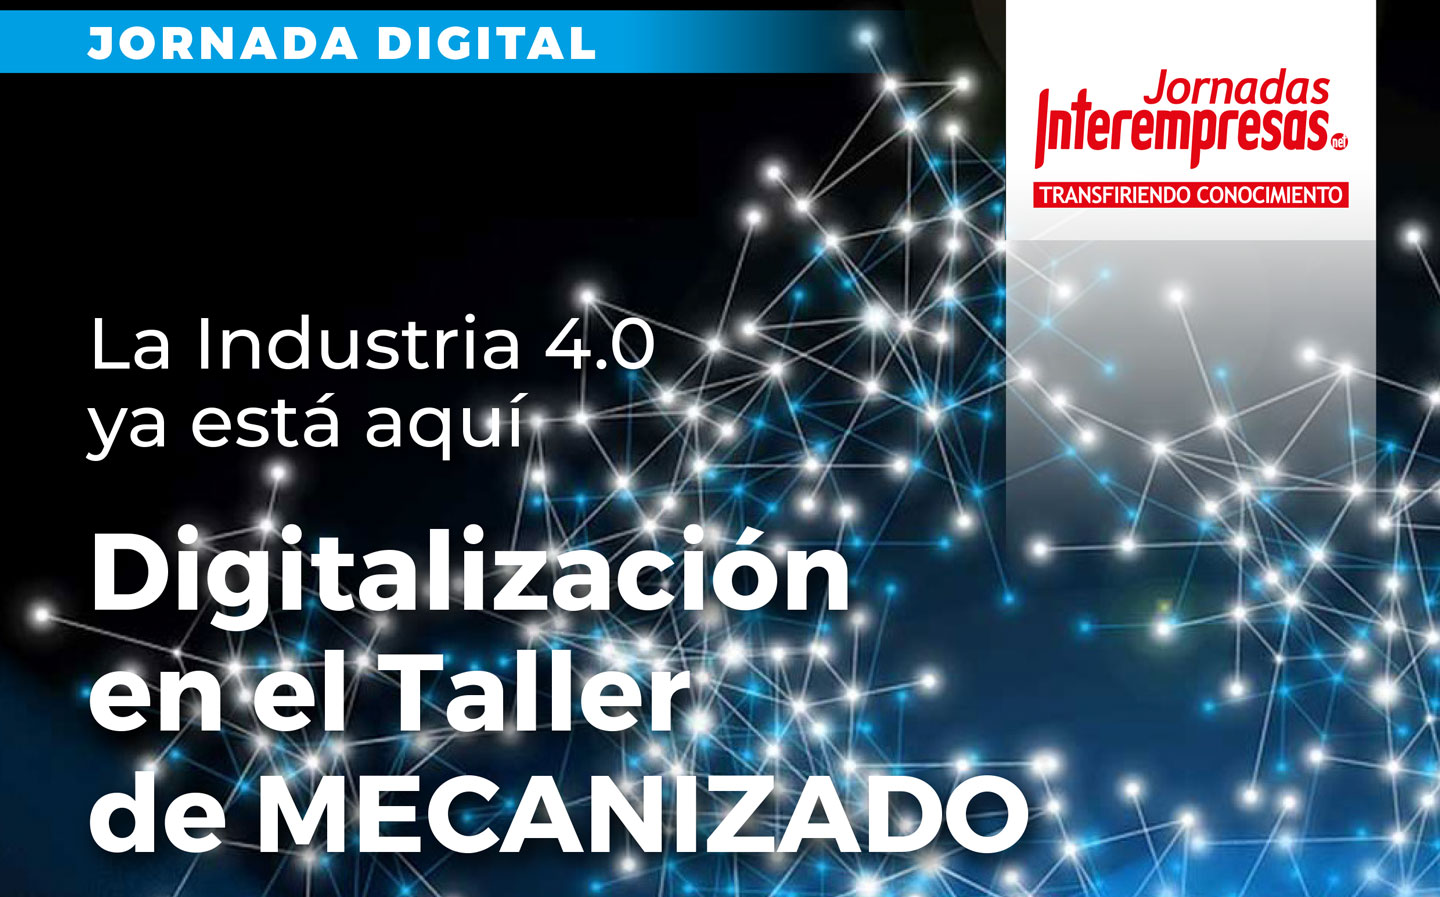 cartel de Digitalización en el taller de mecanizado 2020